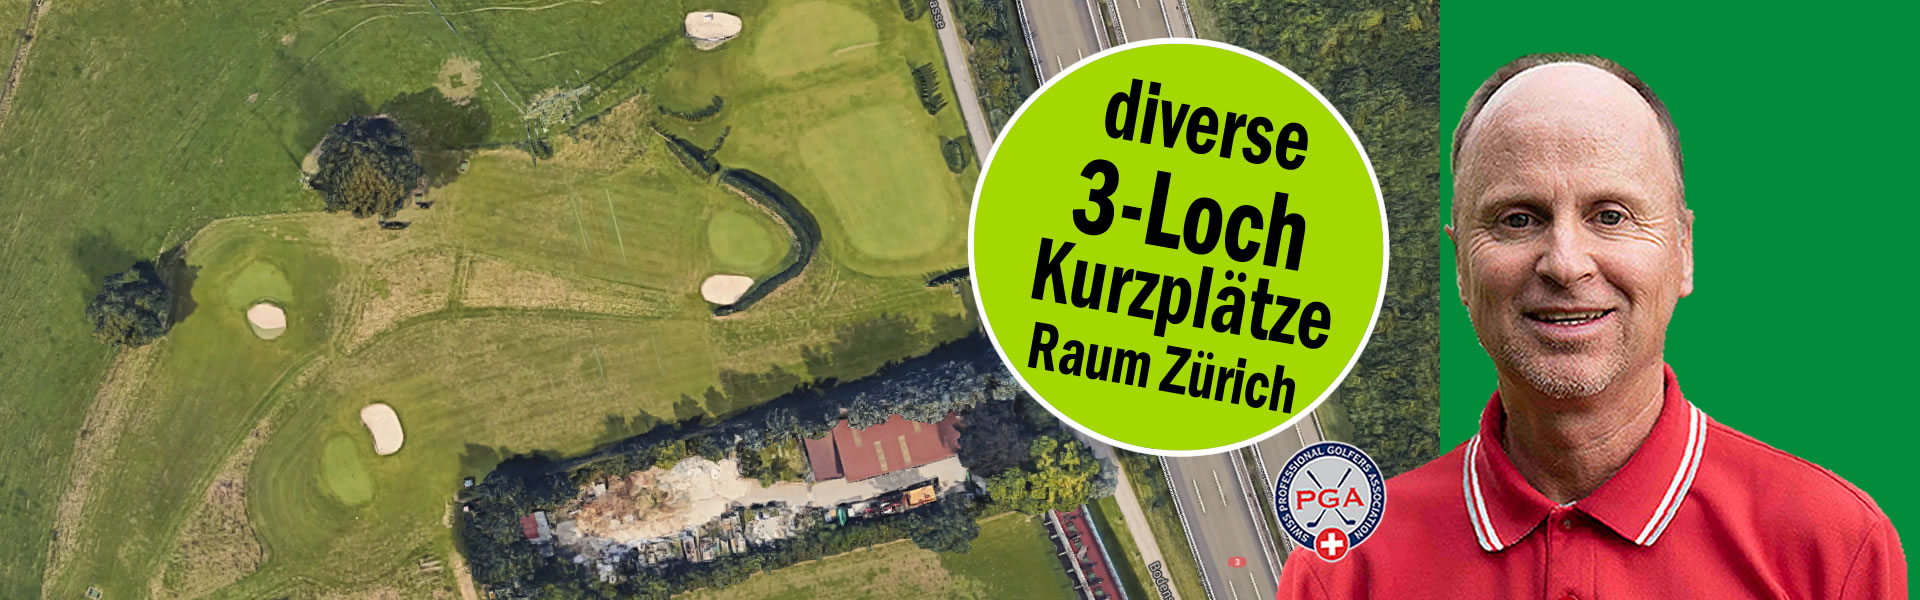 D-Golf-Unterricht-Golf-Pro-Lehrer-Golfstunden-Zuerich-Thierry-Rombaldi-3Loch-Golf-Kurzplatz